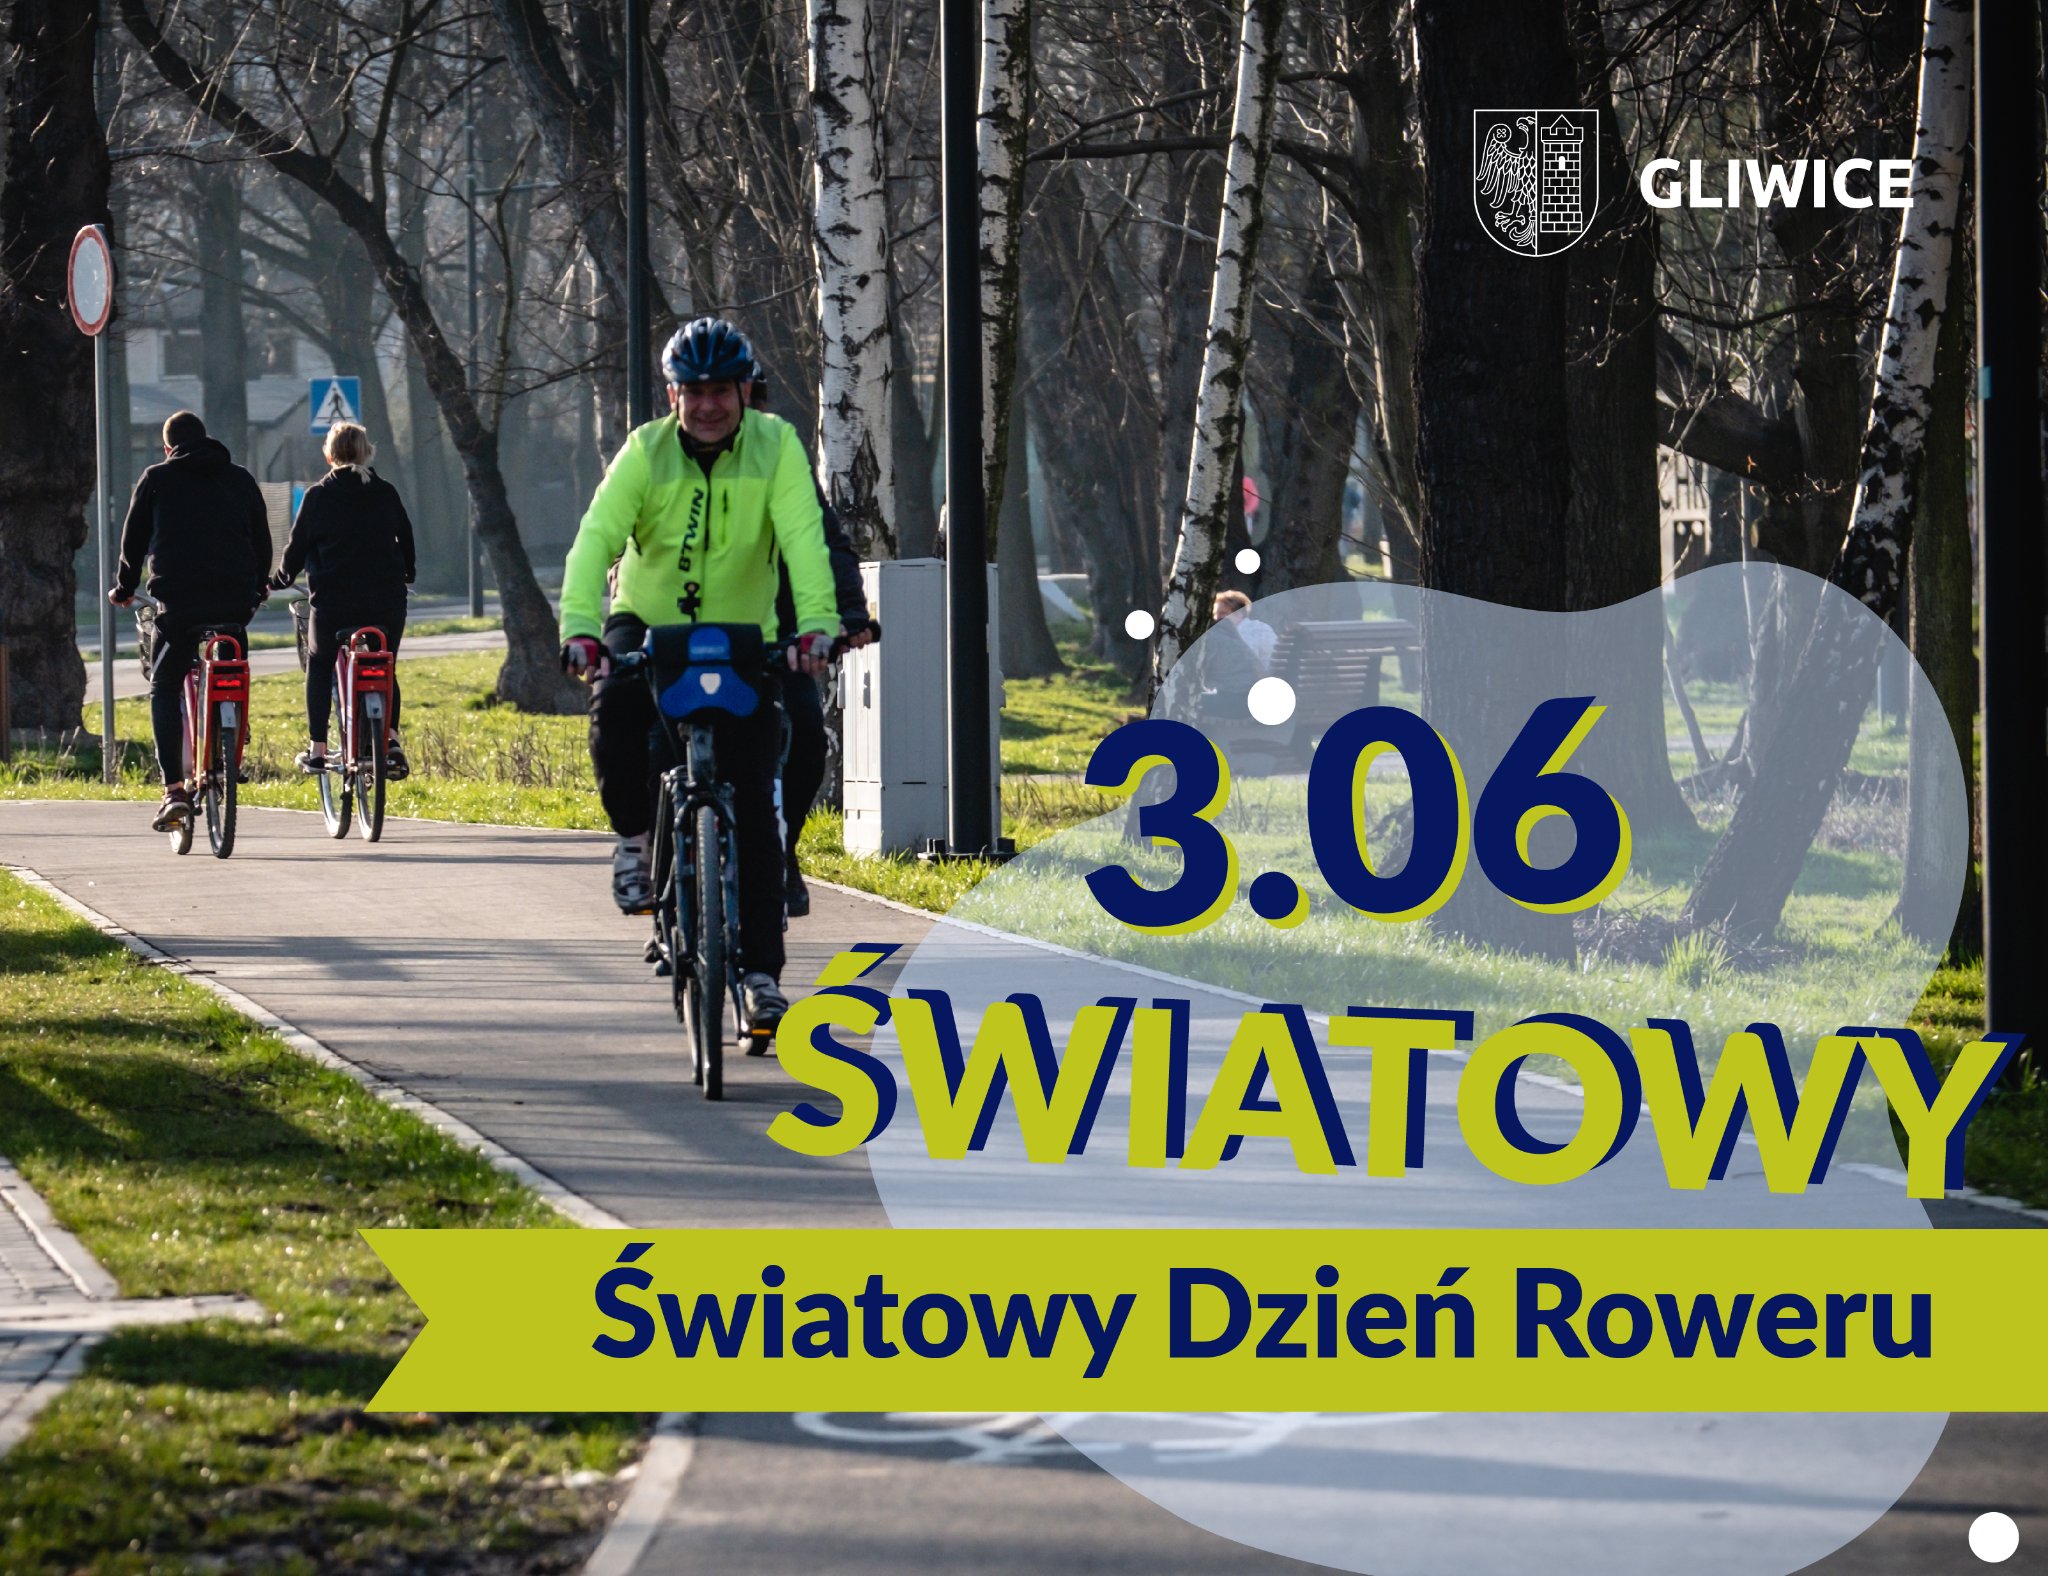 Gliwice ❤ rowery!